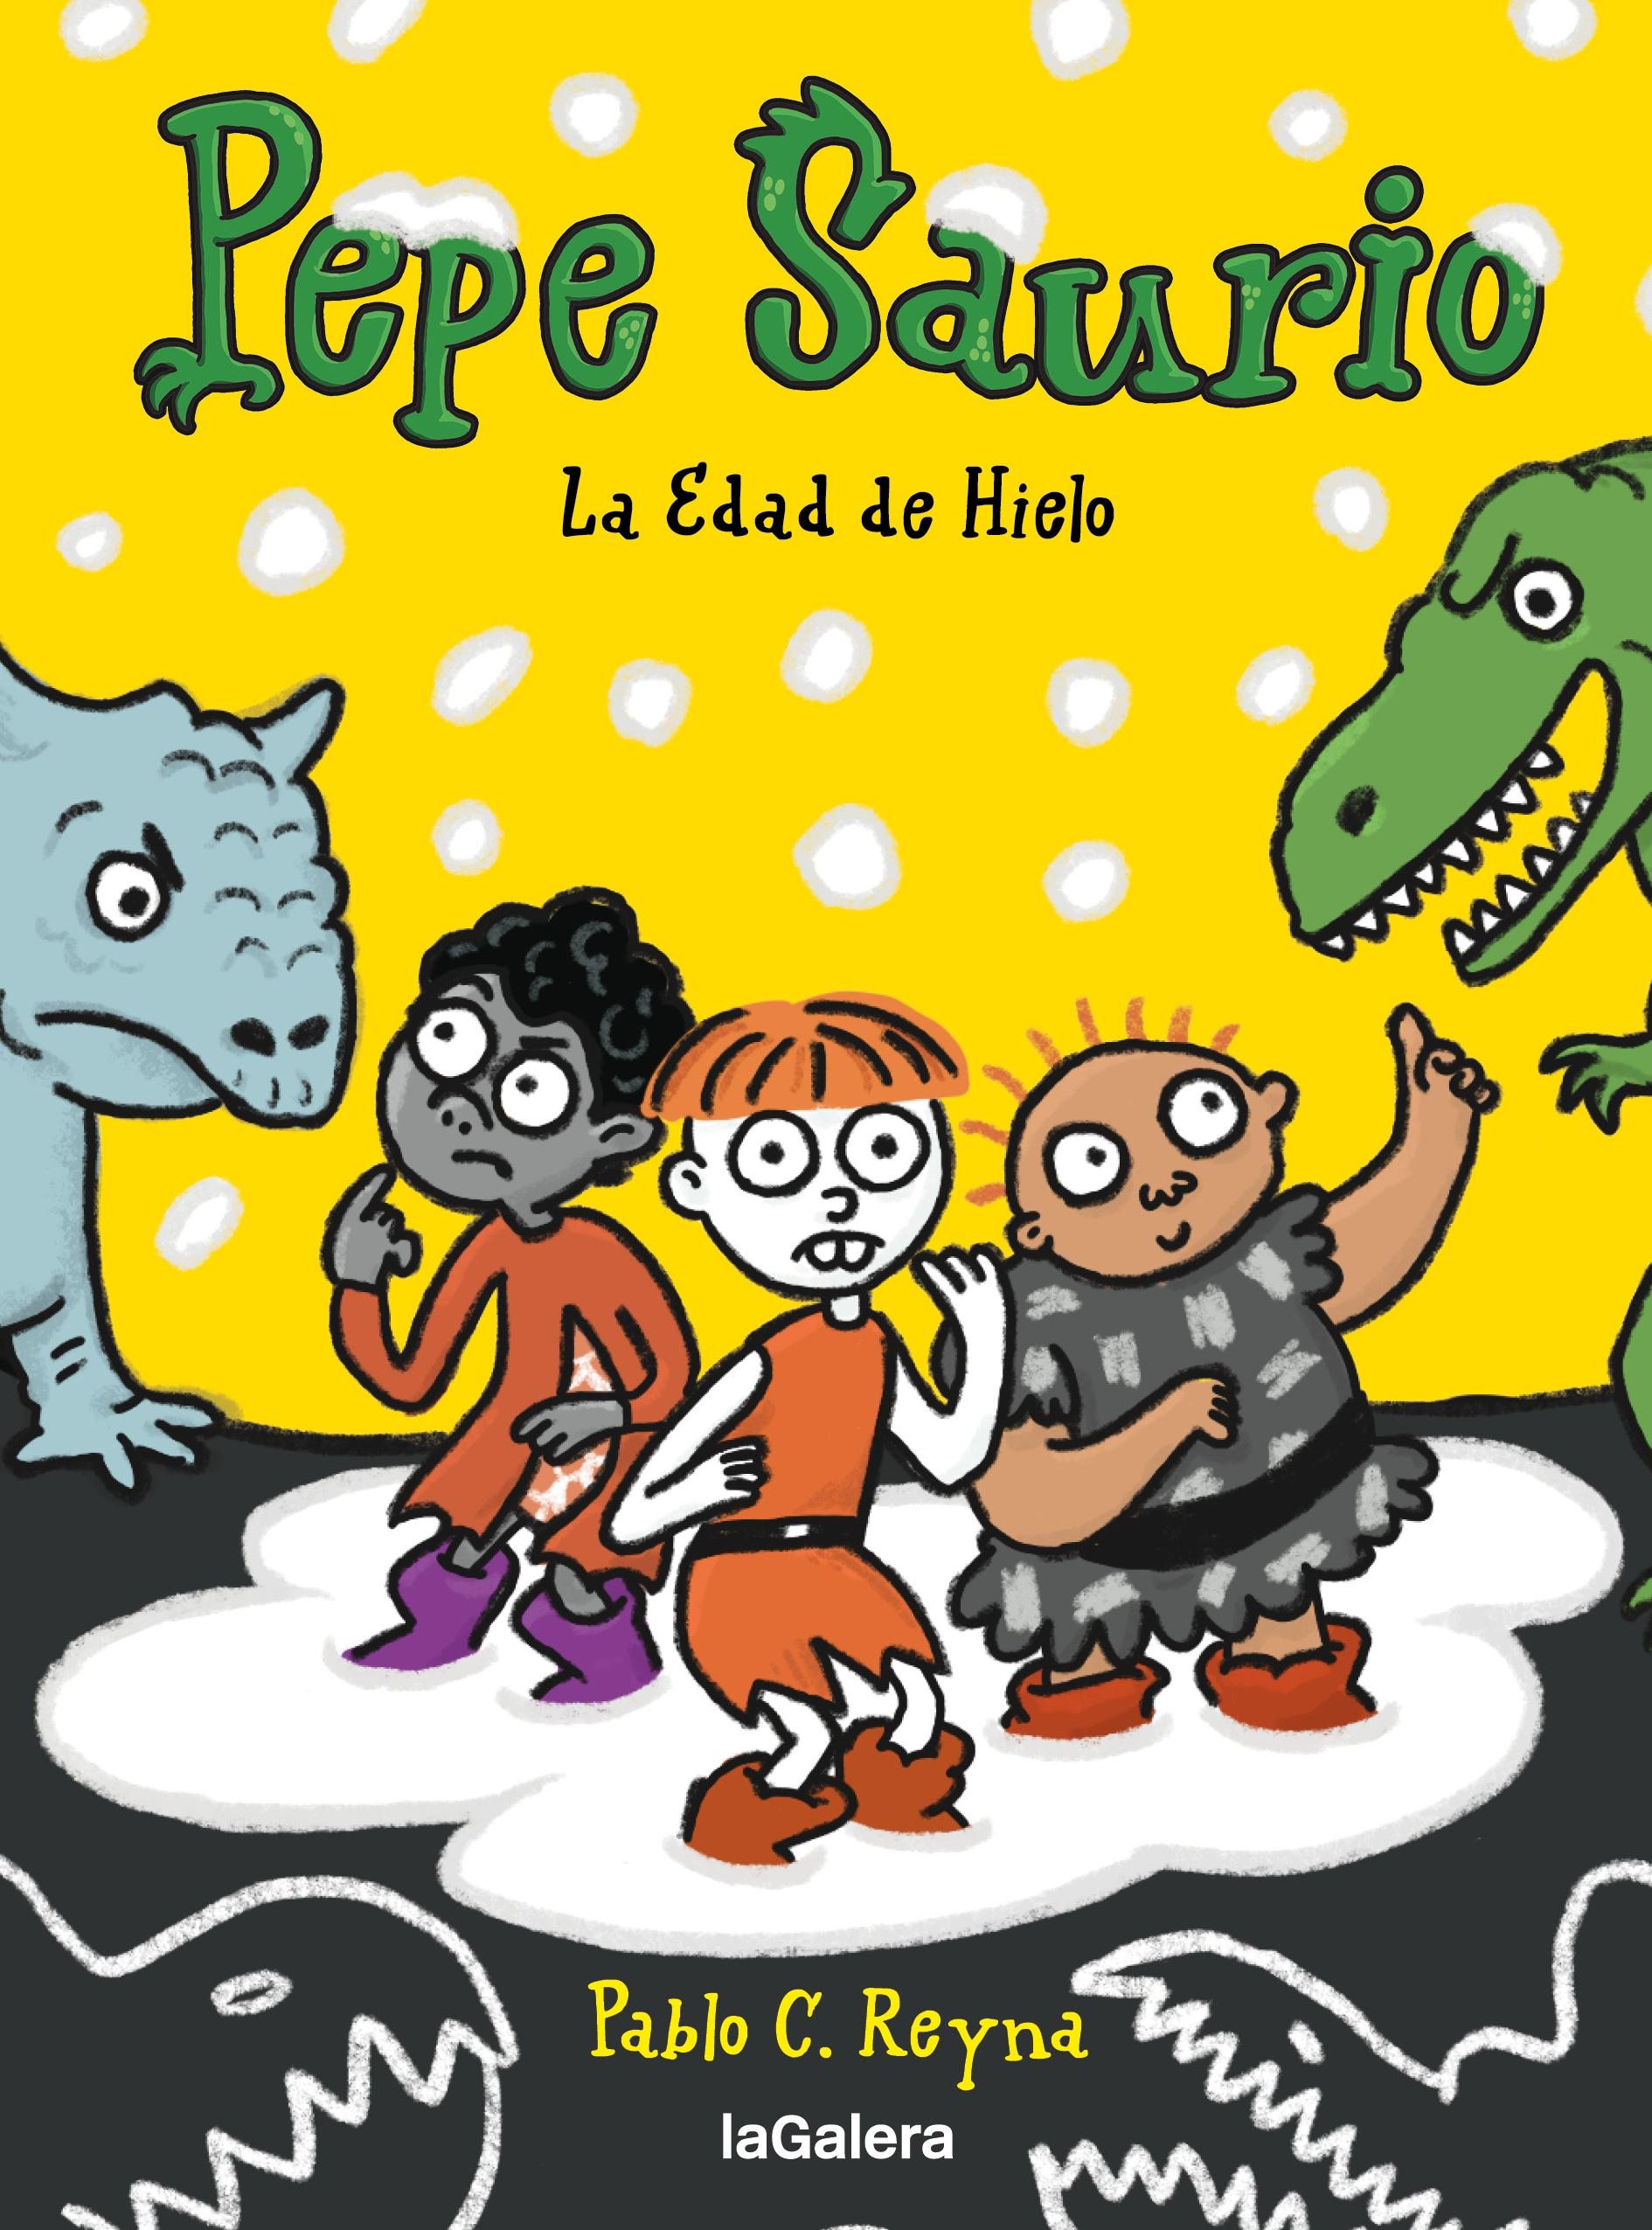 Pepe Saurio 3 "La Edad de Hielo". 